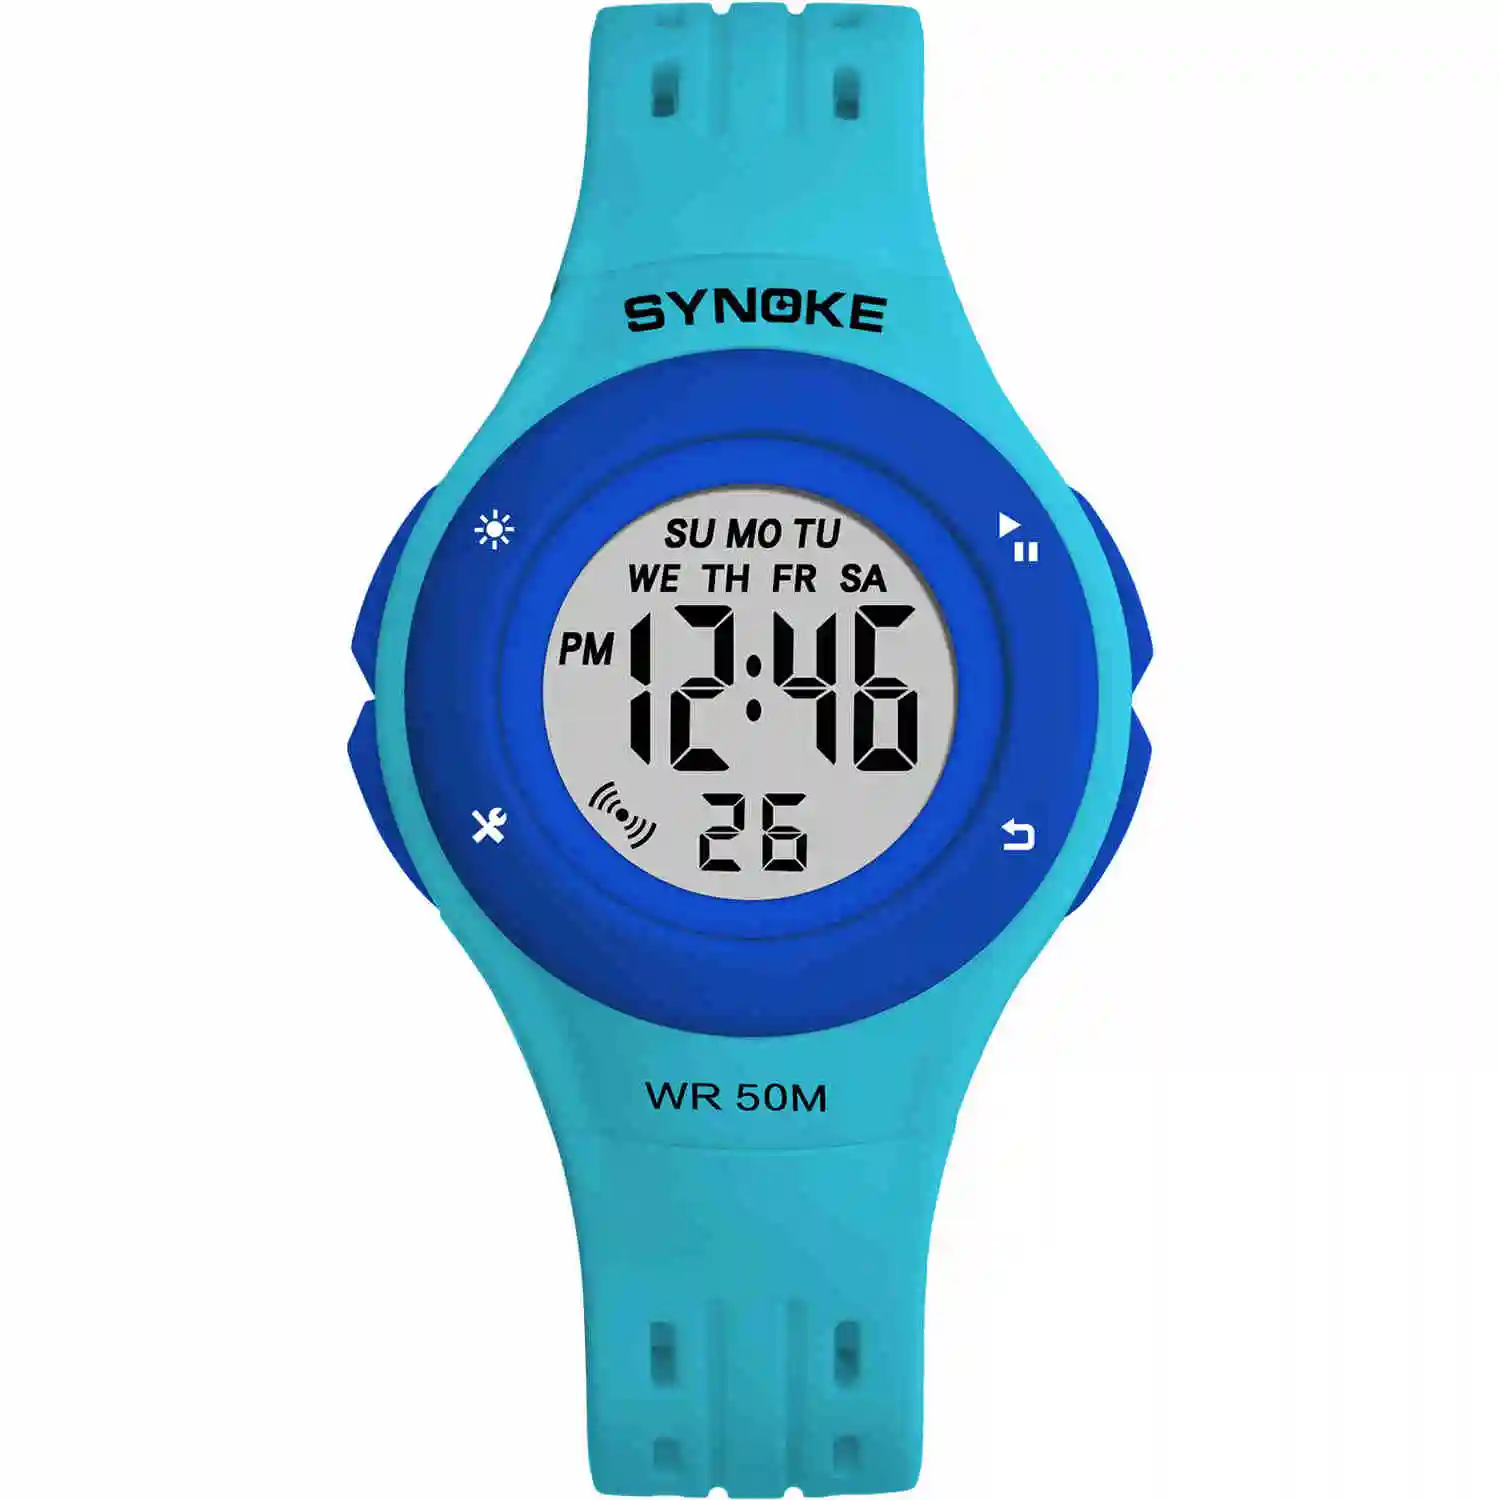 SYNOKE красочные светодиодный детские часы WR50M водонепроницаемые детские наручные часы будильник многофункциональные часы для девочек и мальчиков - Цвет: Синий